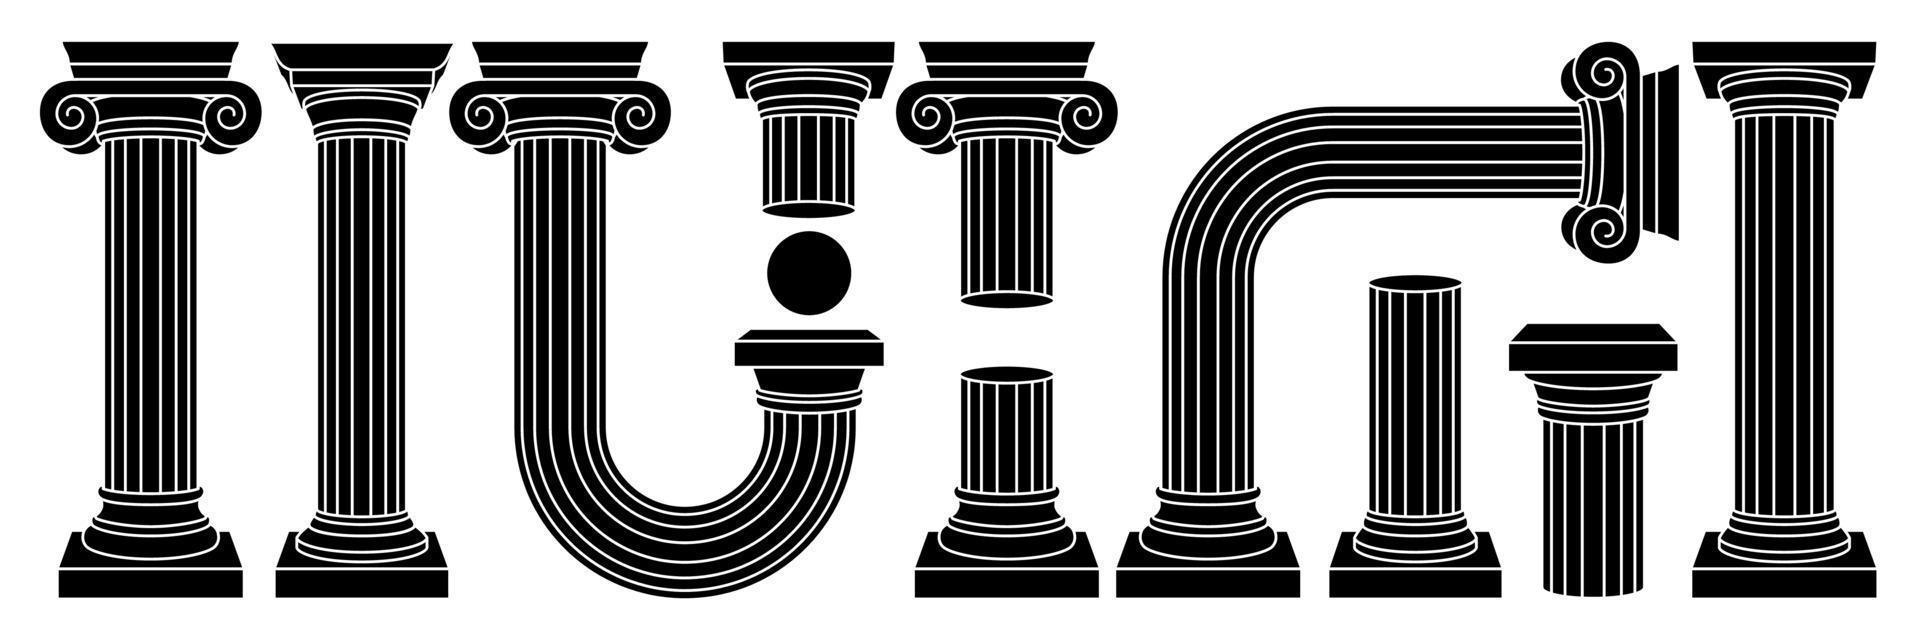 columna antigua griega, pilar, pedestal en estilo contemporáneo de contorno. colores blanco y negro. vector